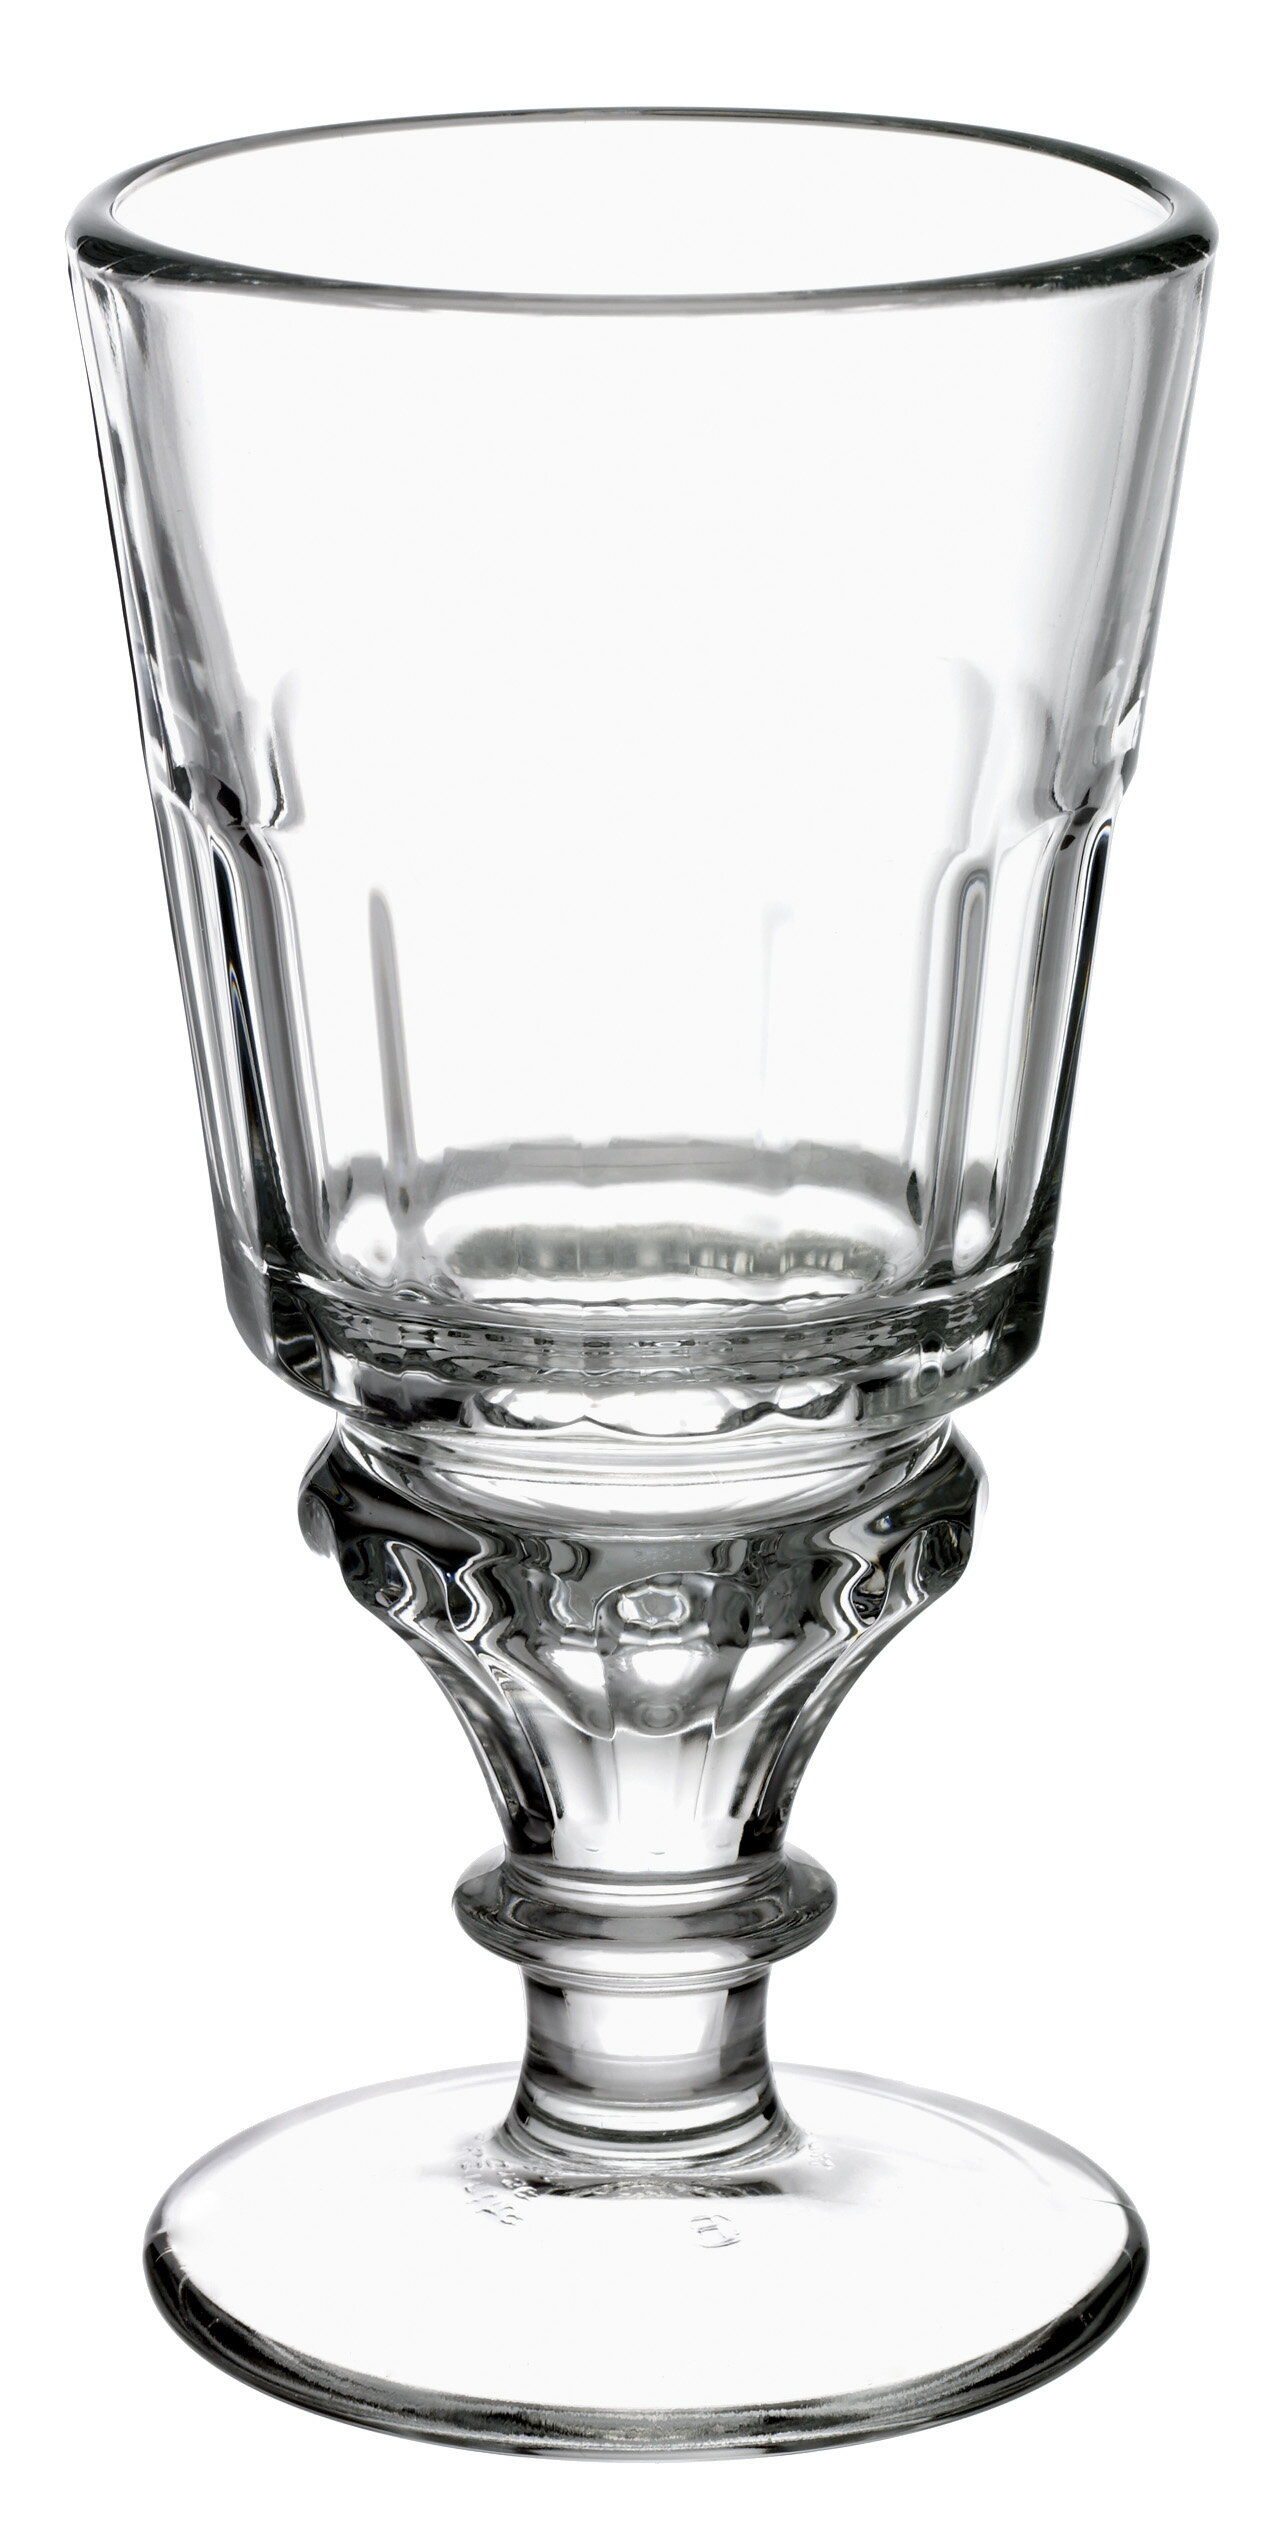 ラ ロシェール アブサングラス クリア 食器 ガラス食器 ガラス グラス フランス製